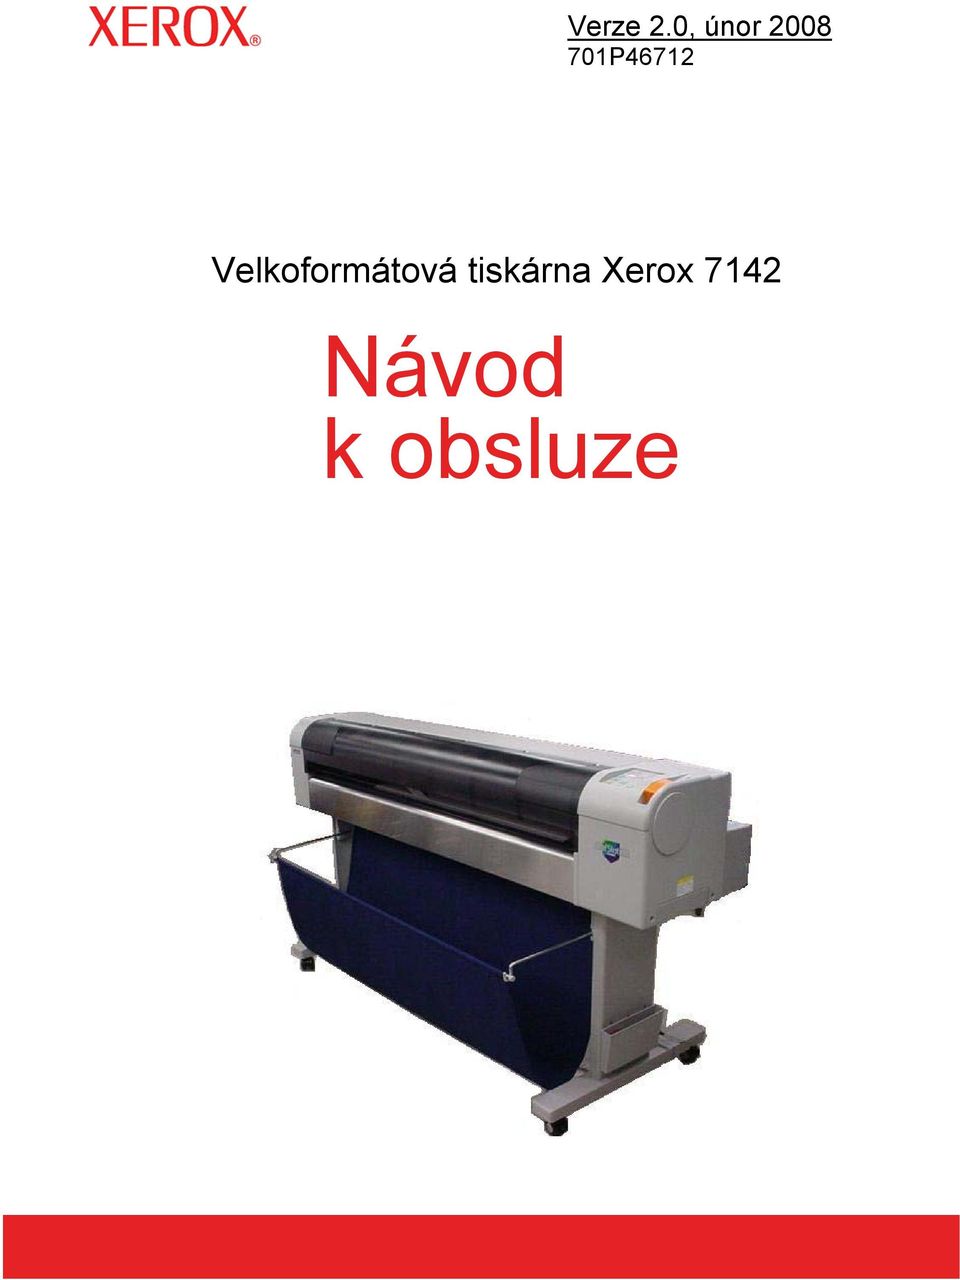 Velkoformátová tiskárna Xerox